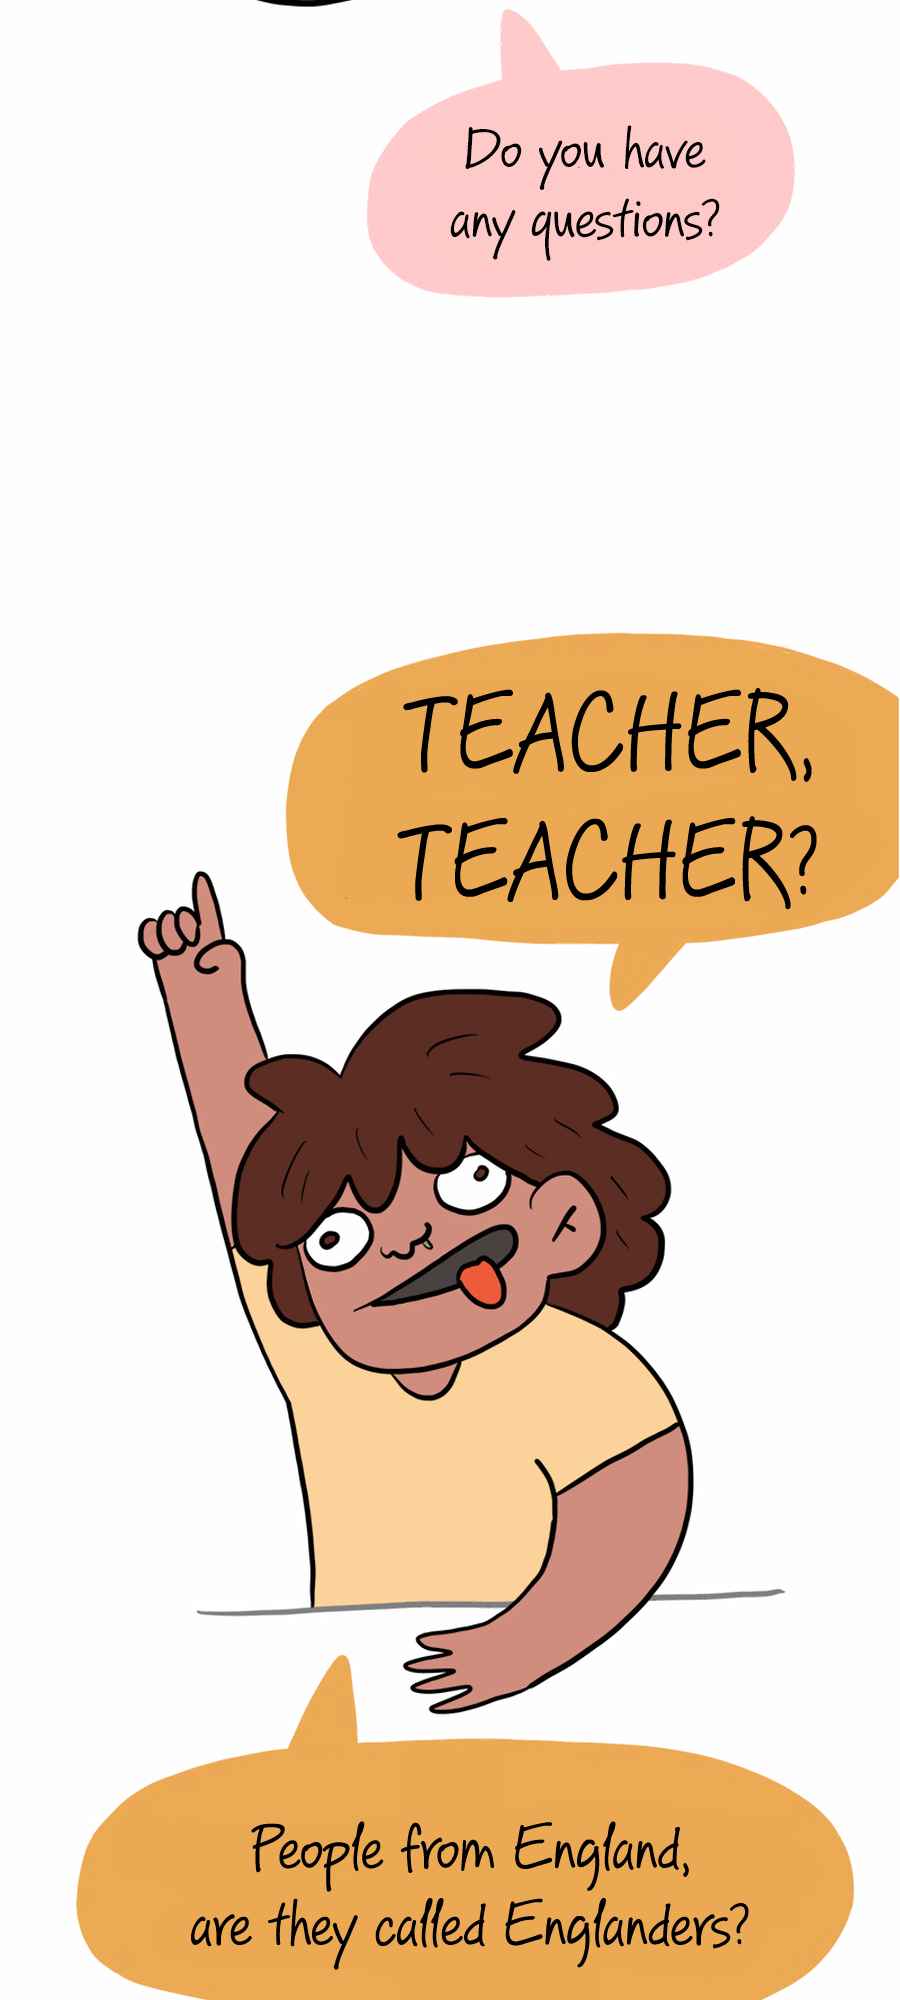 Mr. Teacher 1